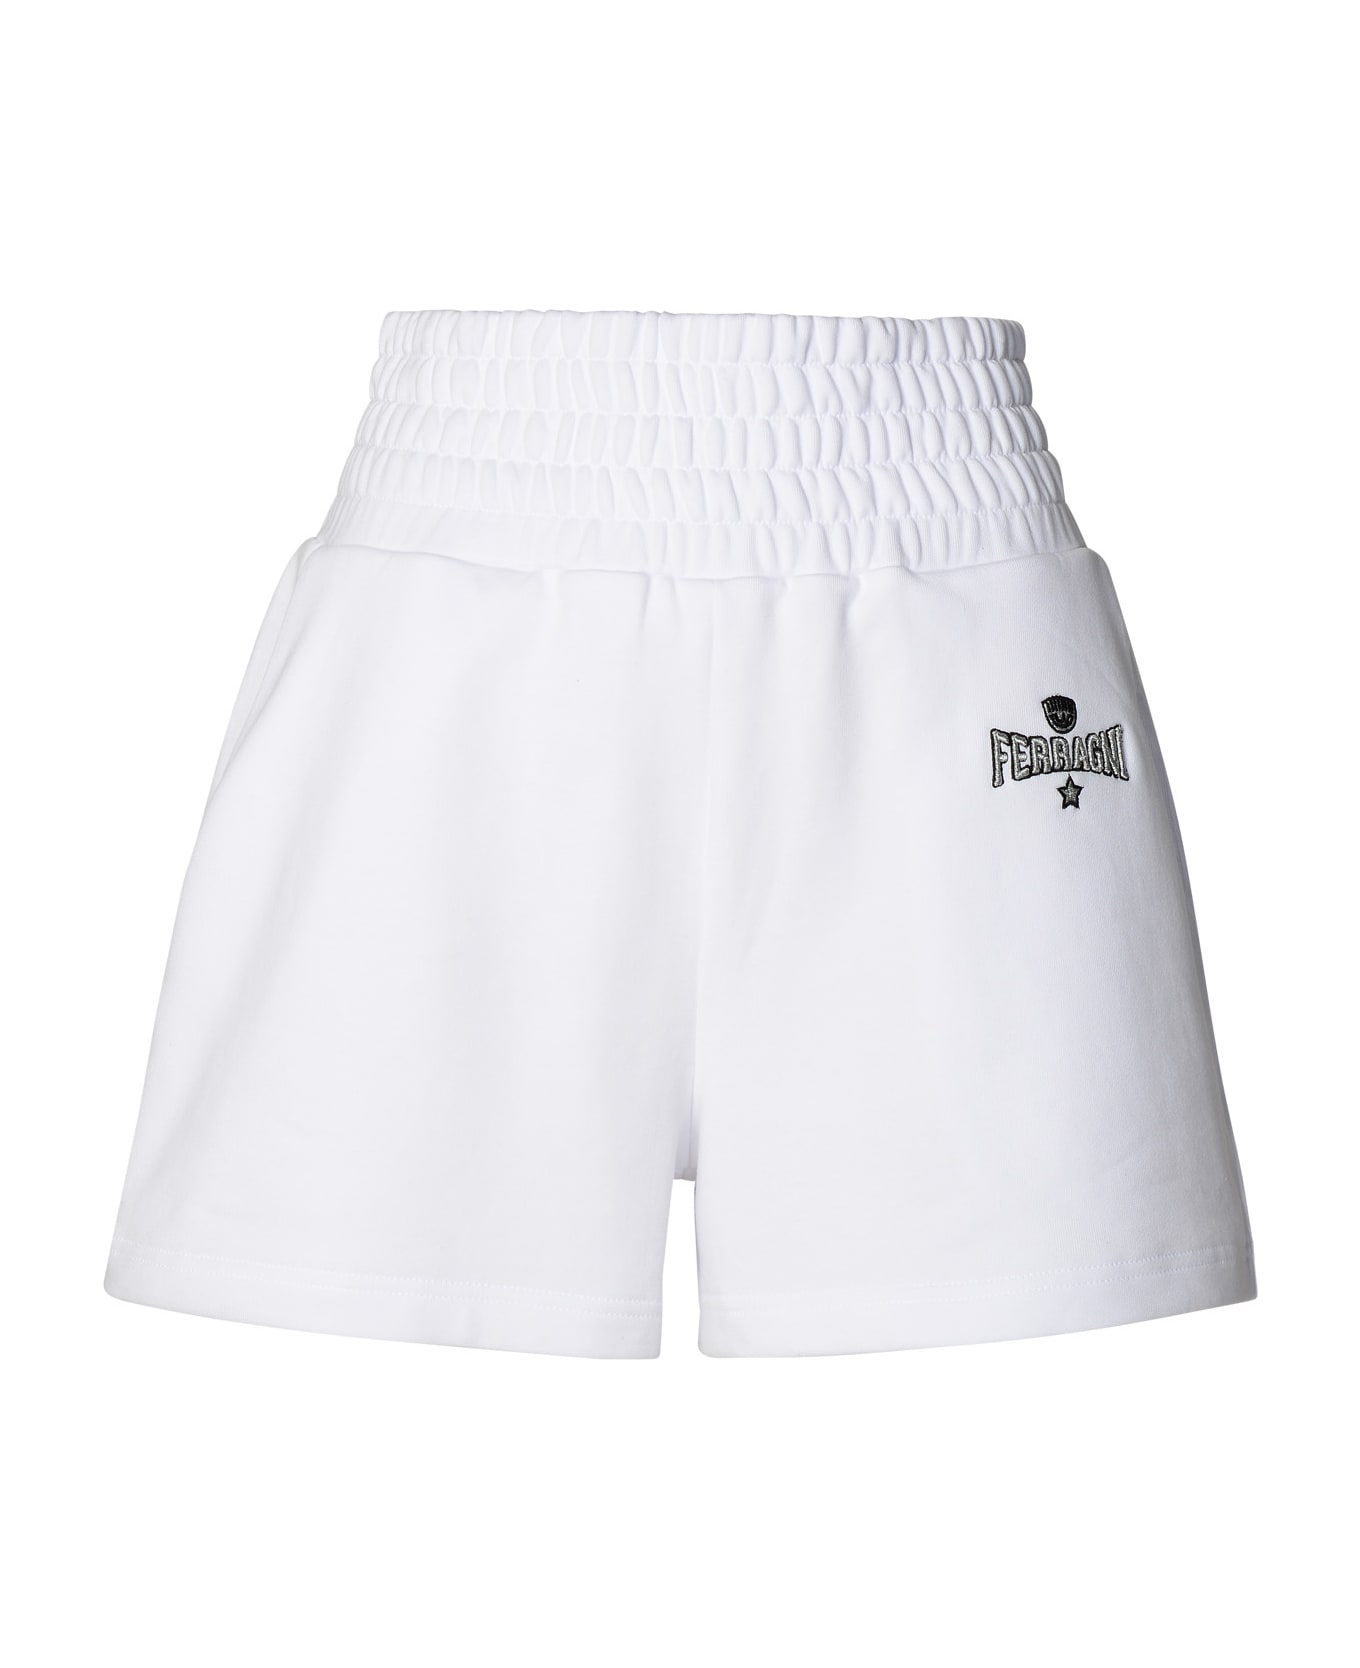 Chiara Ferragni White Cotton Shorts - White ショートパンツ